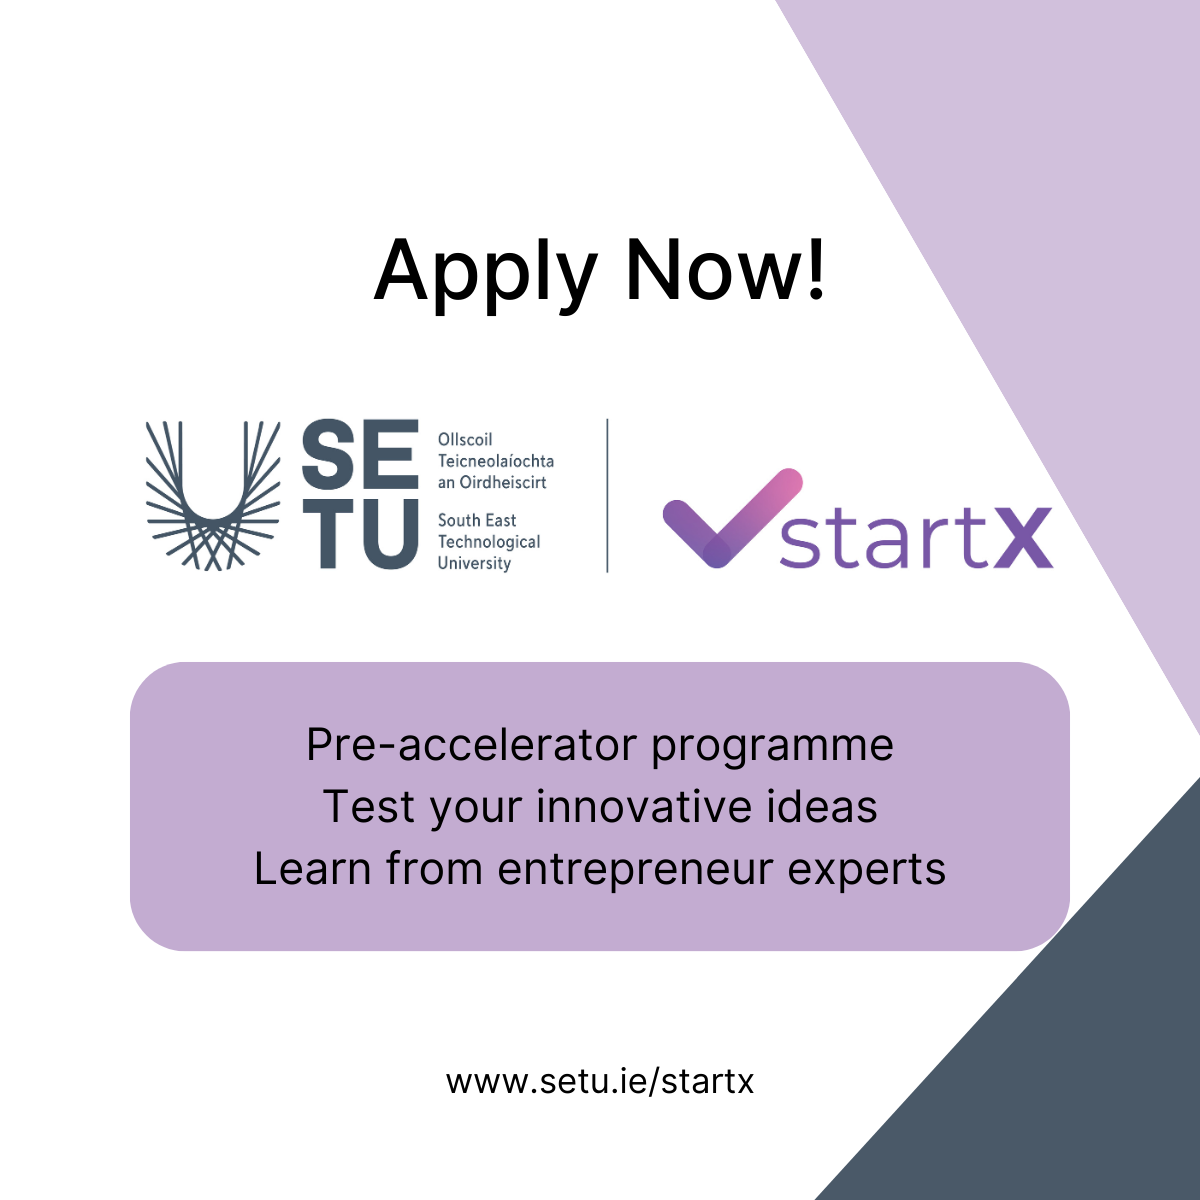 SETU Unveils StartX Entrepreneurship Programme to Foster Regional Innovation StartX Entrepreneurship Programme aim is to bolster innovation and entrepreneurship in the South East.